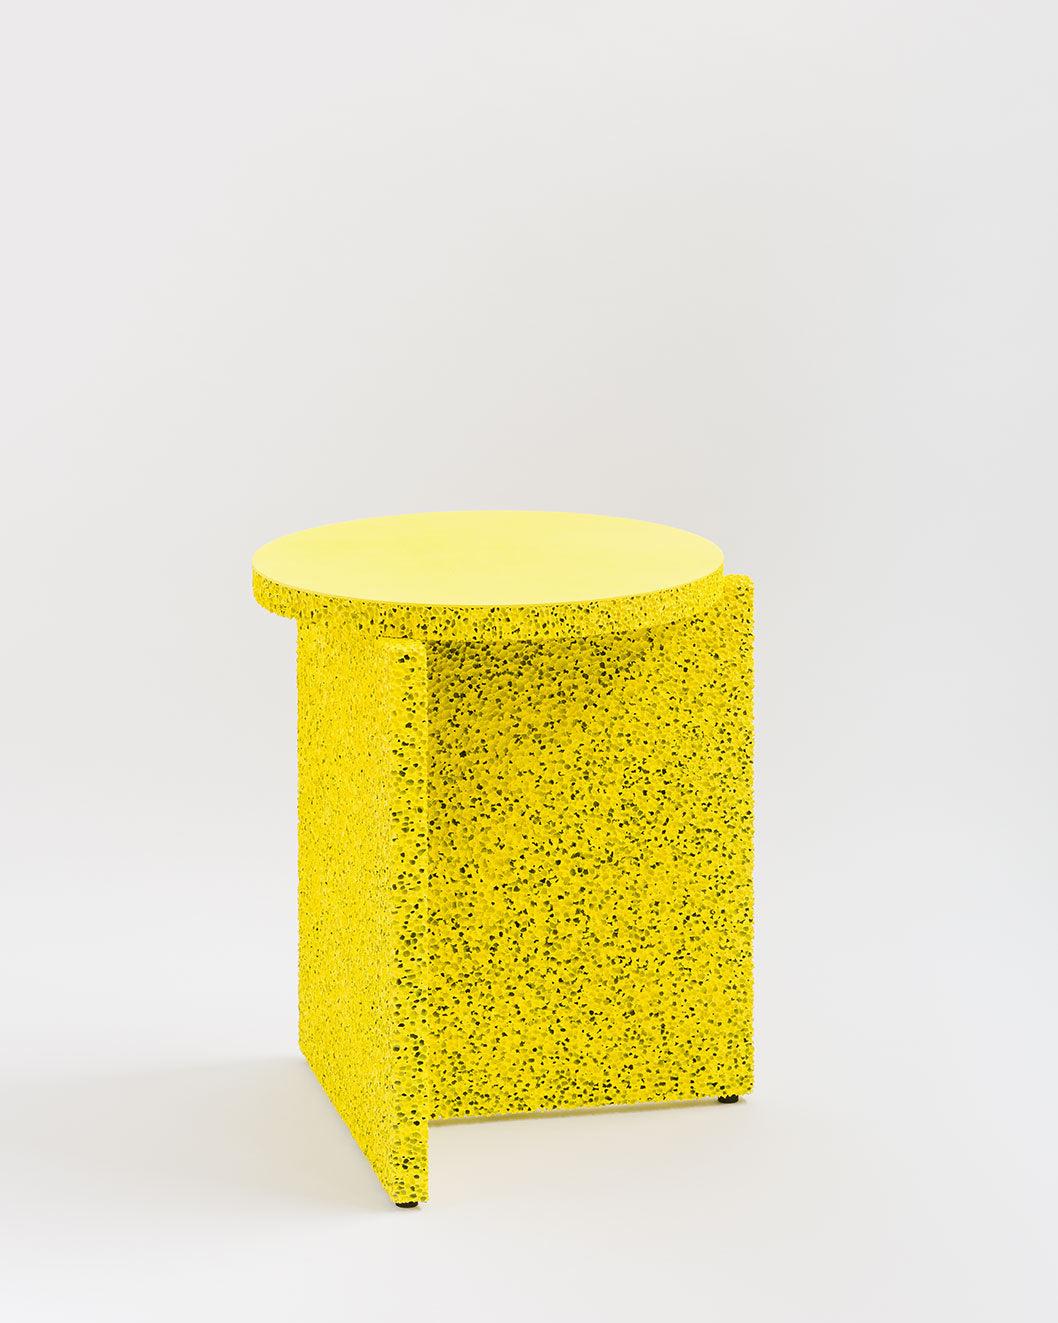 Kleiner Tisch aus synthetischem Küchenschwamm von Calen Knauf
Abmessungen: T 40 x B 35 x H 35 cm
MATERIALIEN: Lackiertes Aluminium
Auch verfügbar: Individuelle Farben und Größen sind möglich,

Der Sponge Table ist ein skulpturaler Beistelltisch